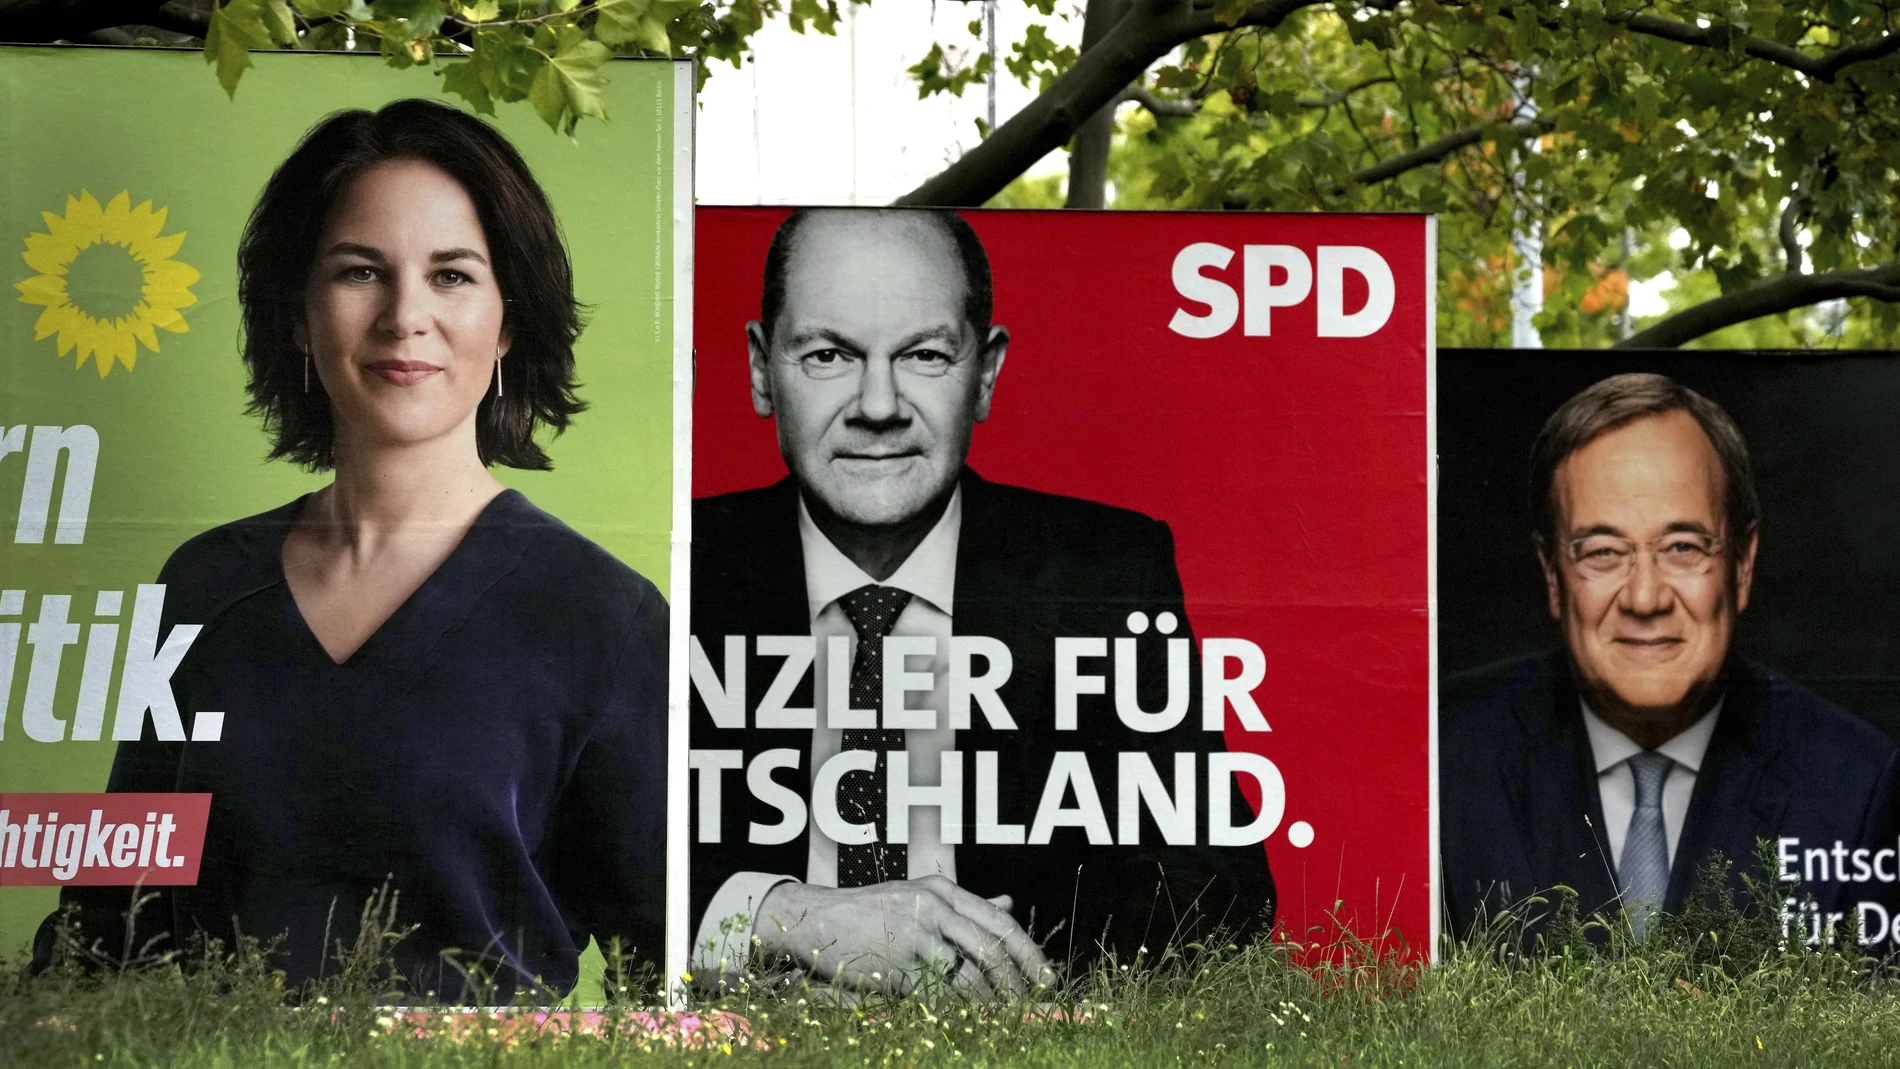 Scholz, Laschet o Baerbock, los principales candidatos que buscan la cancillería y suplir a Merkel